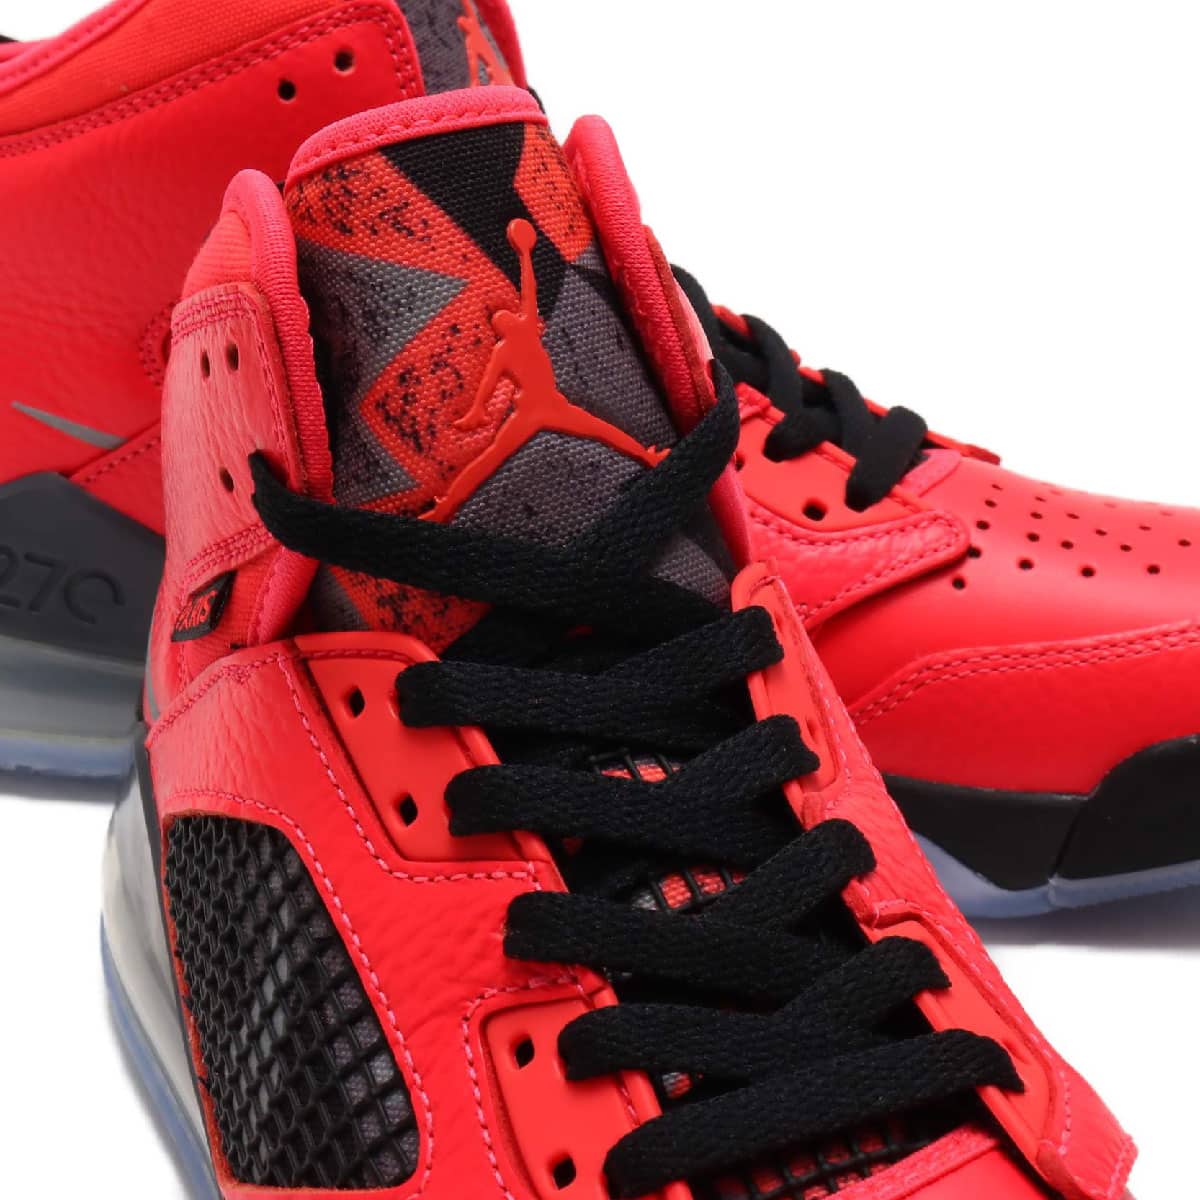 INFRAREDサイズ26.5cm Nike Air Jordan Mars PSG 国内正規品